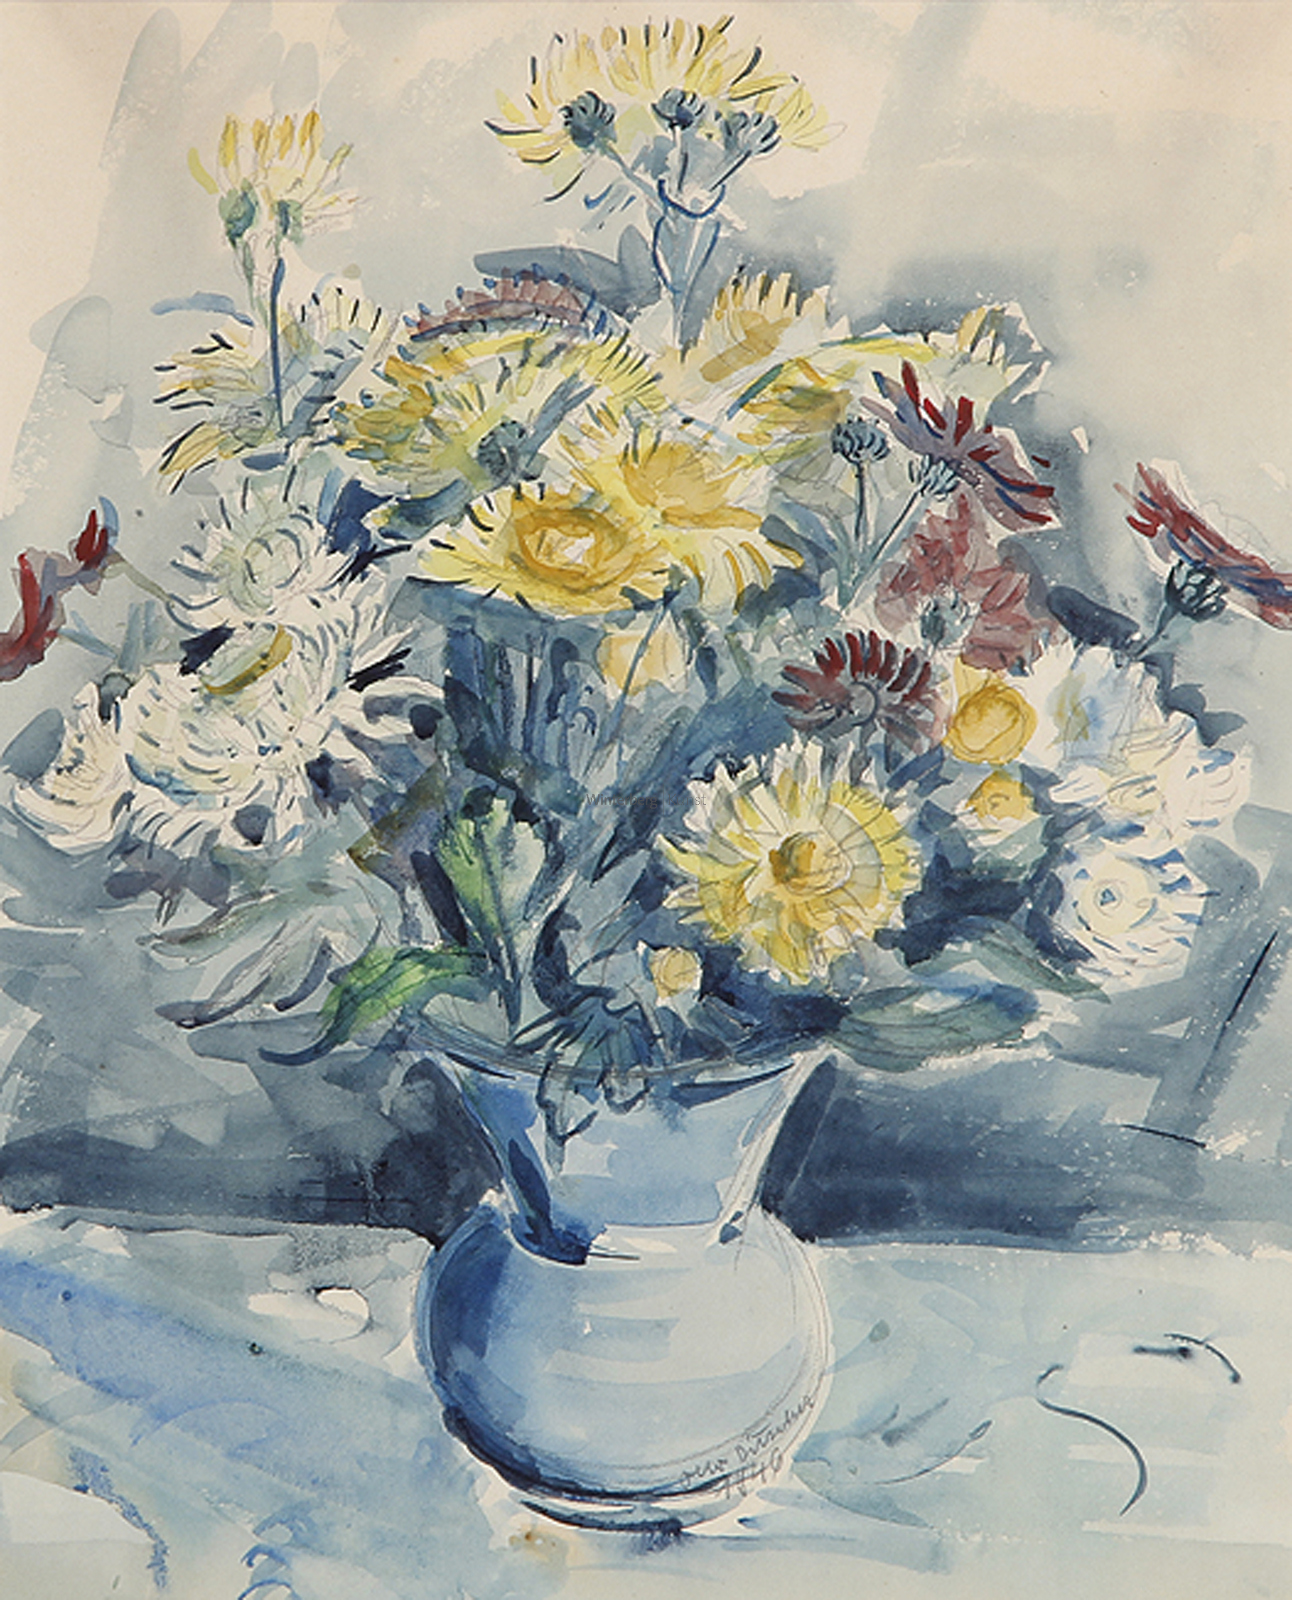 OTTO DITSCHER: Gelb-, weiß- und rotblühende Blumen in einer Vase.